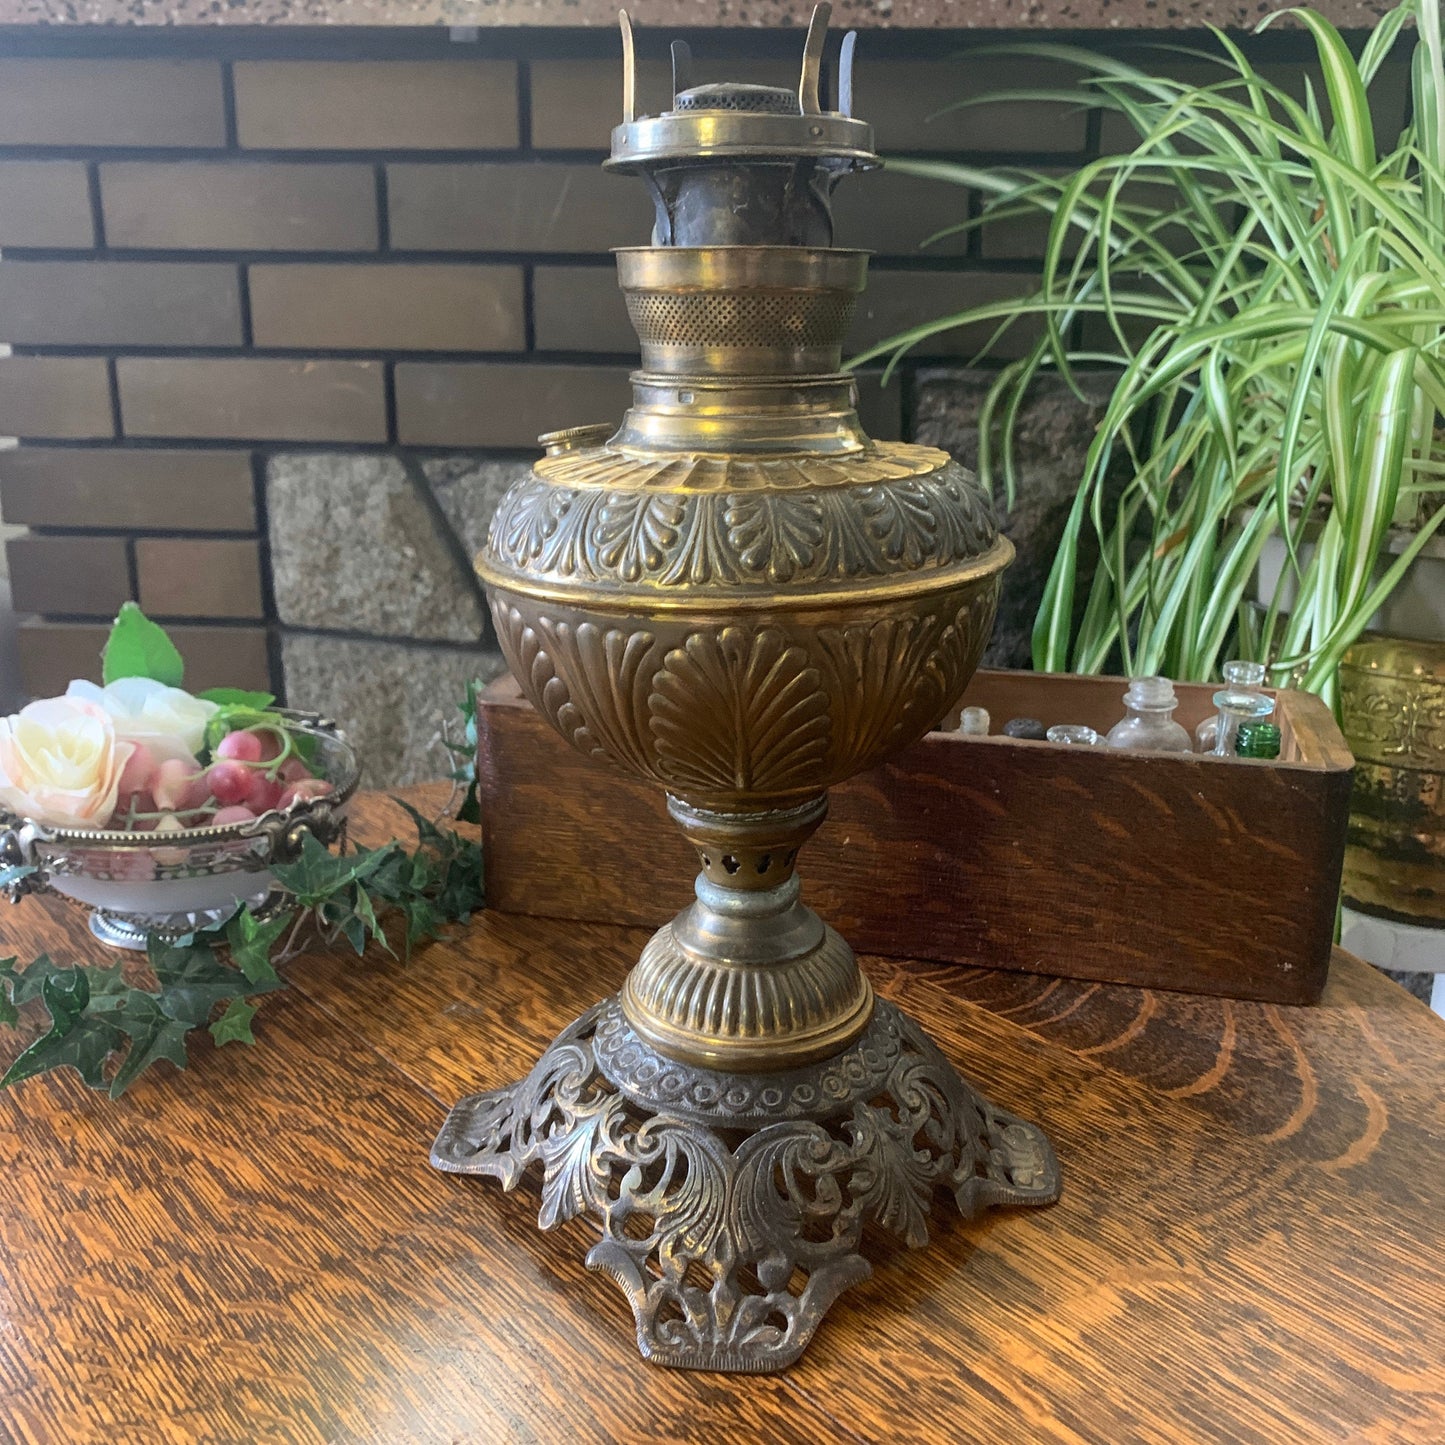 Antique Plume and Atwood Kerosene Lamp